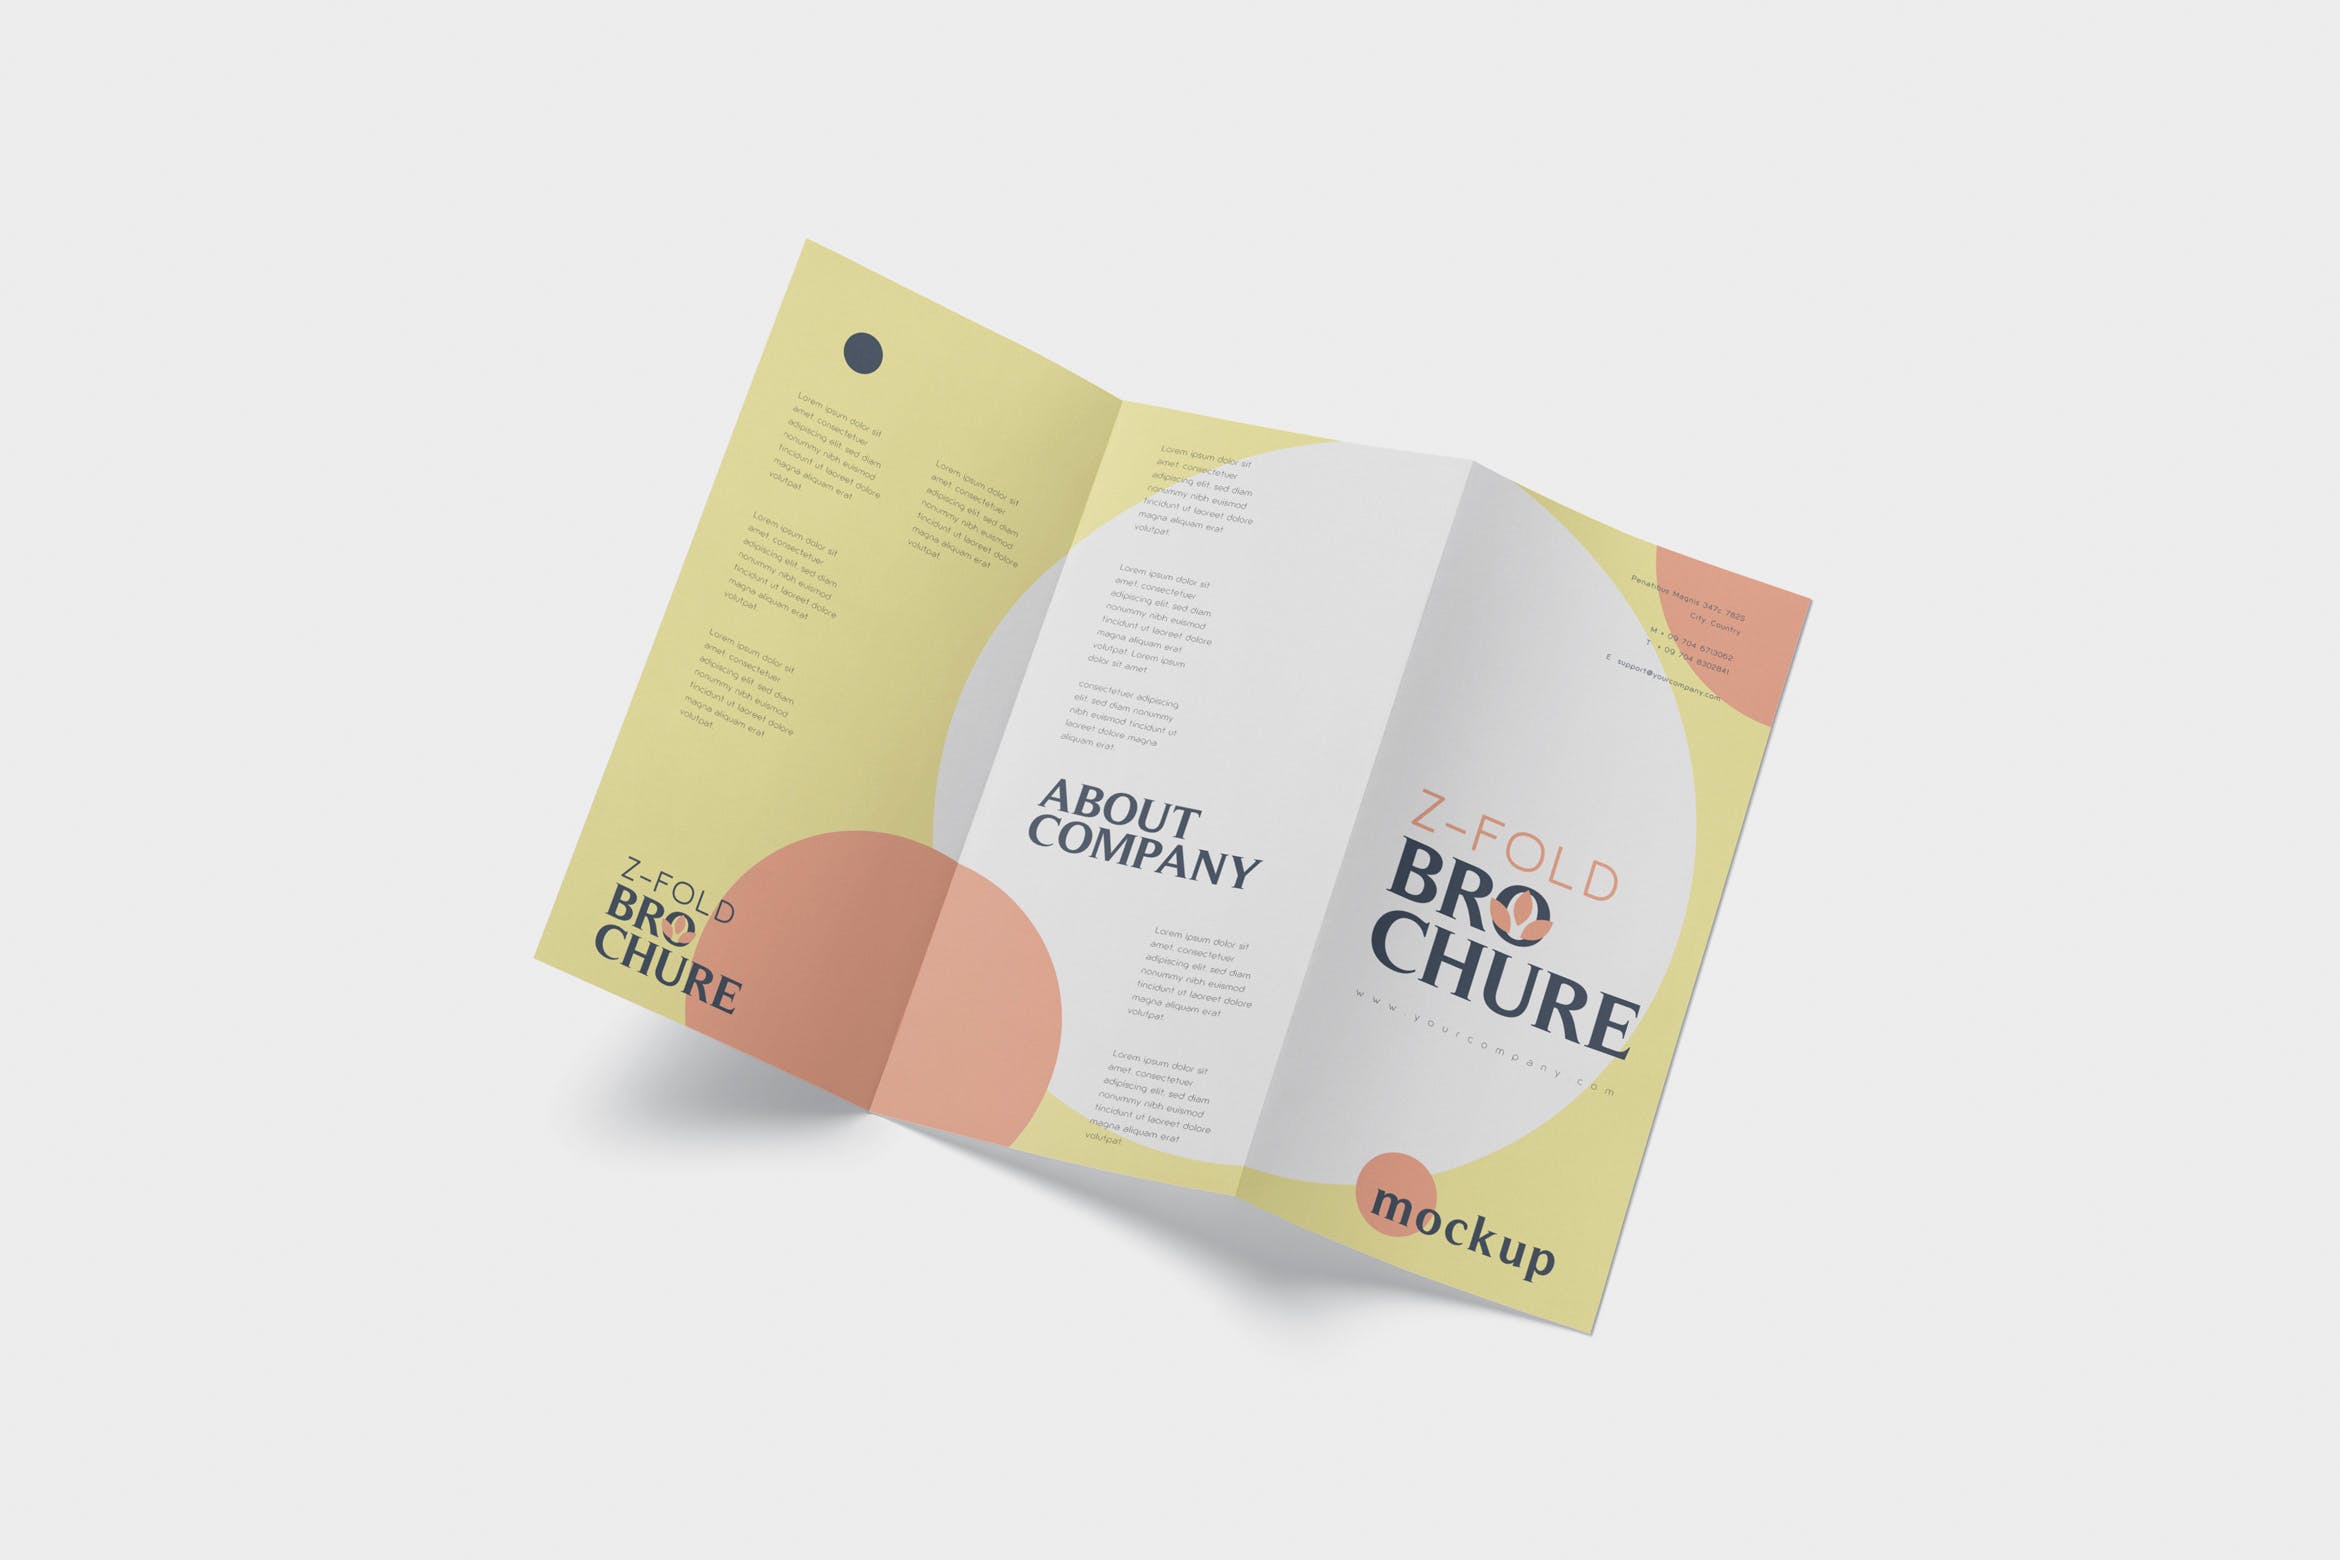 三折页设计风格企业传单/宣传单设计图样机第一素材精选 DL Z-Fold Brochure Mockup – 99 x 210 mm Size插图